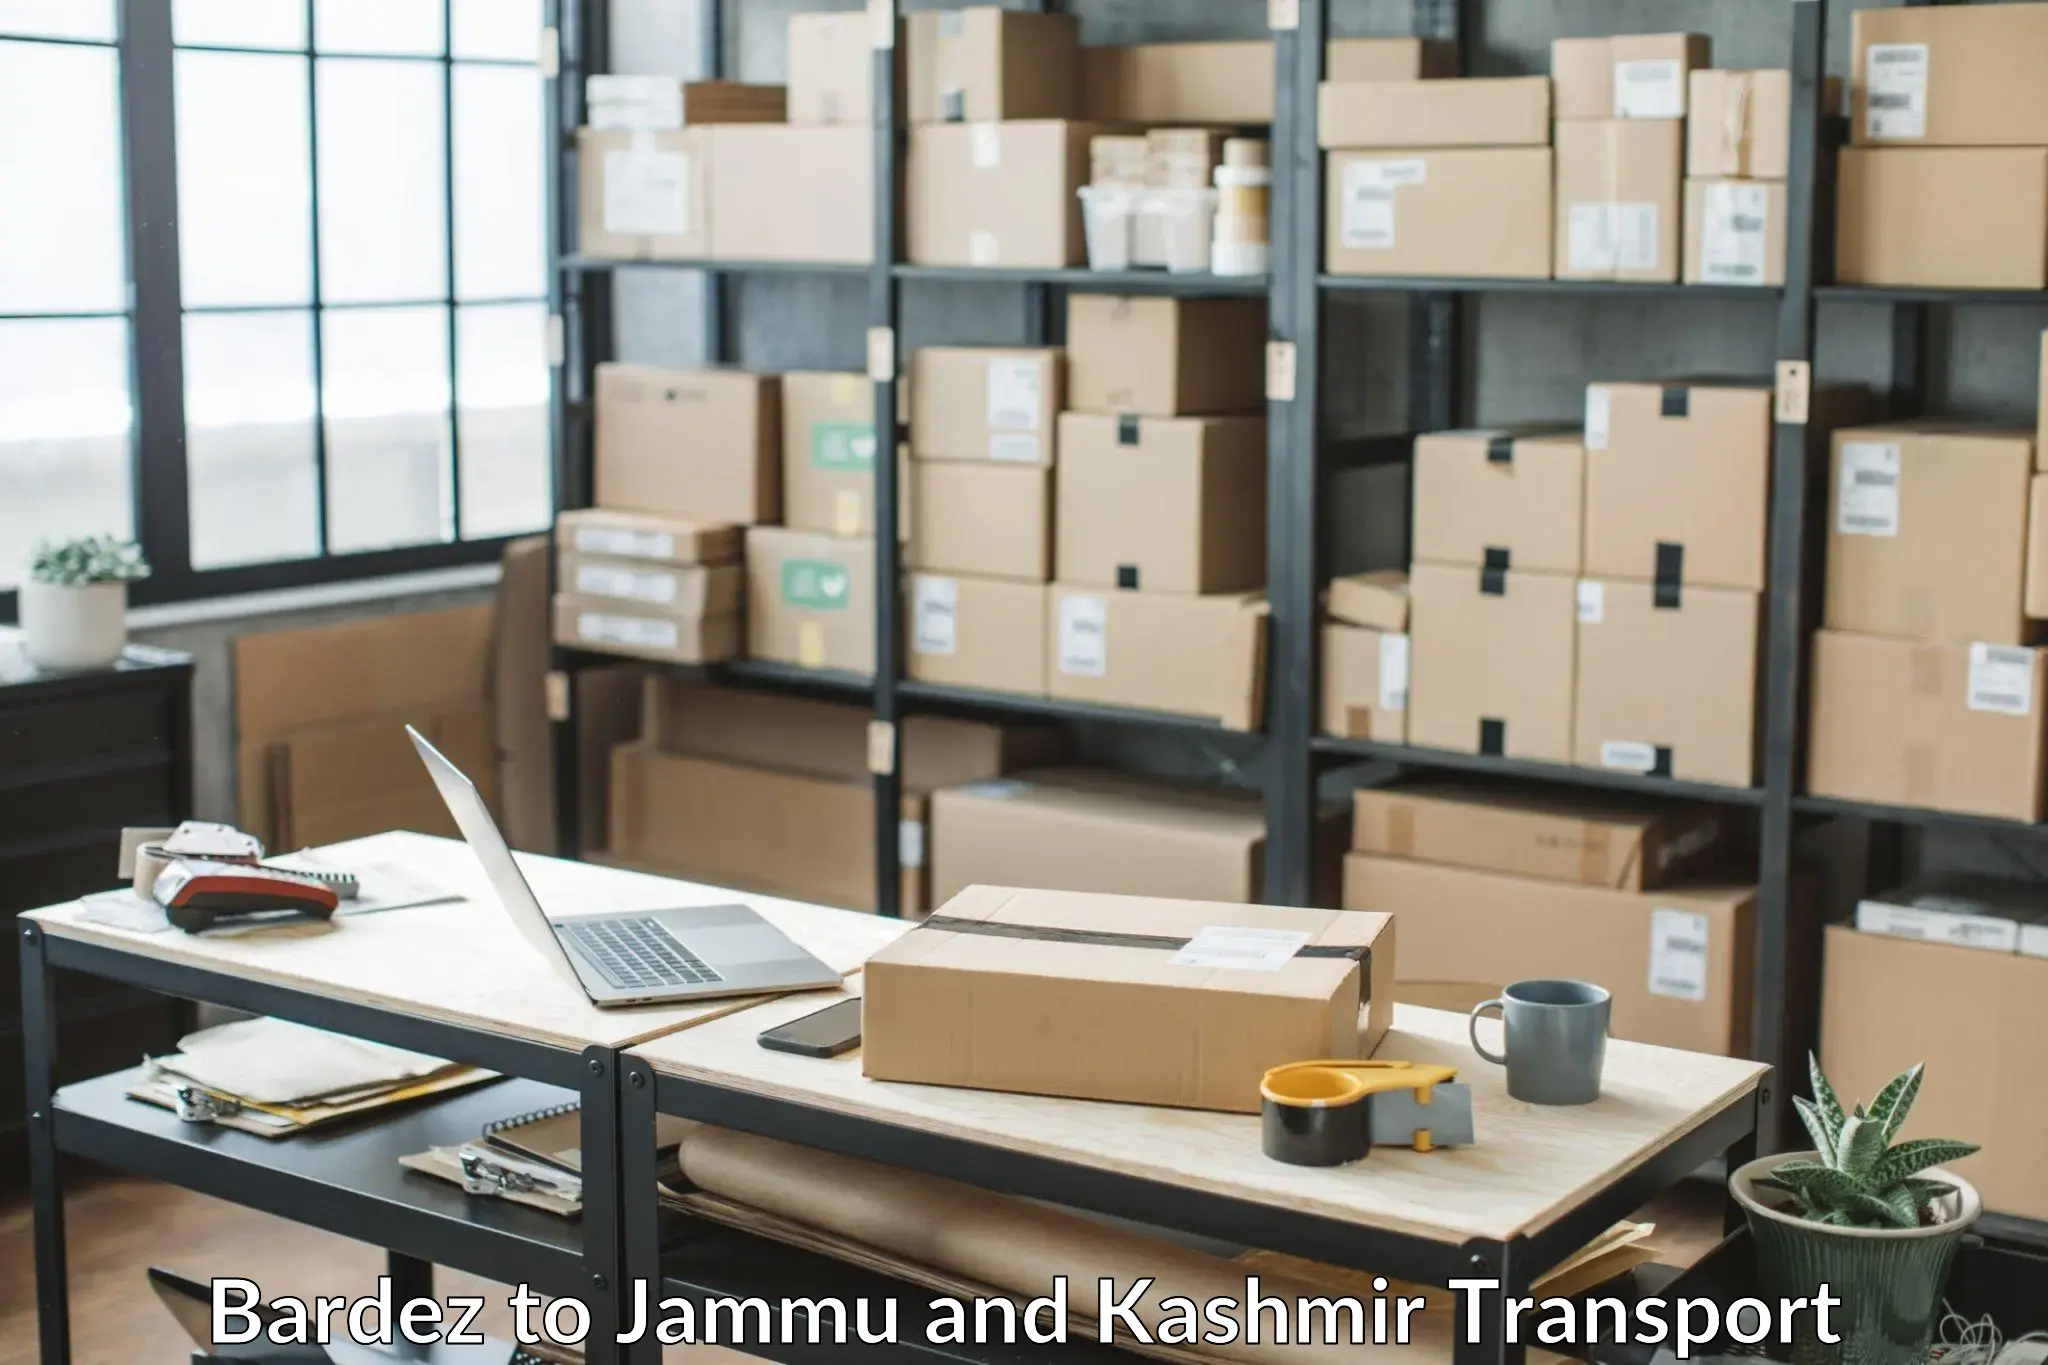 Bike transfer Bardez to Jammu and Kashmir